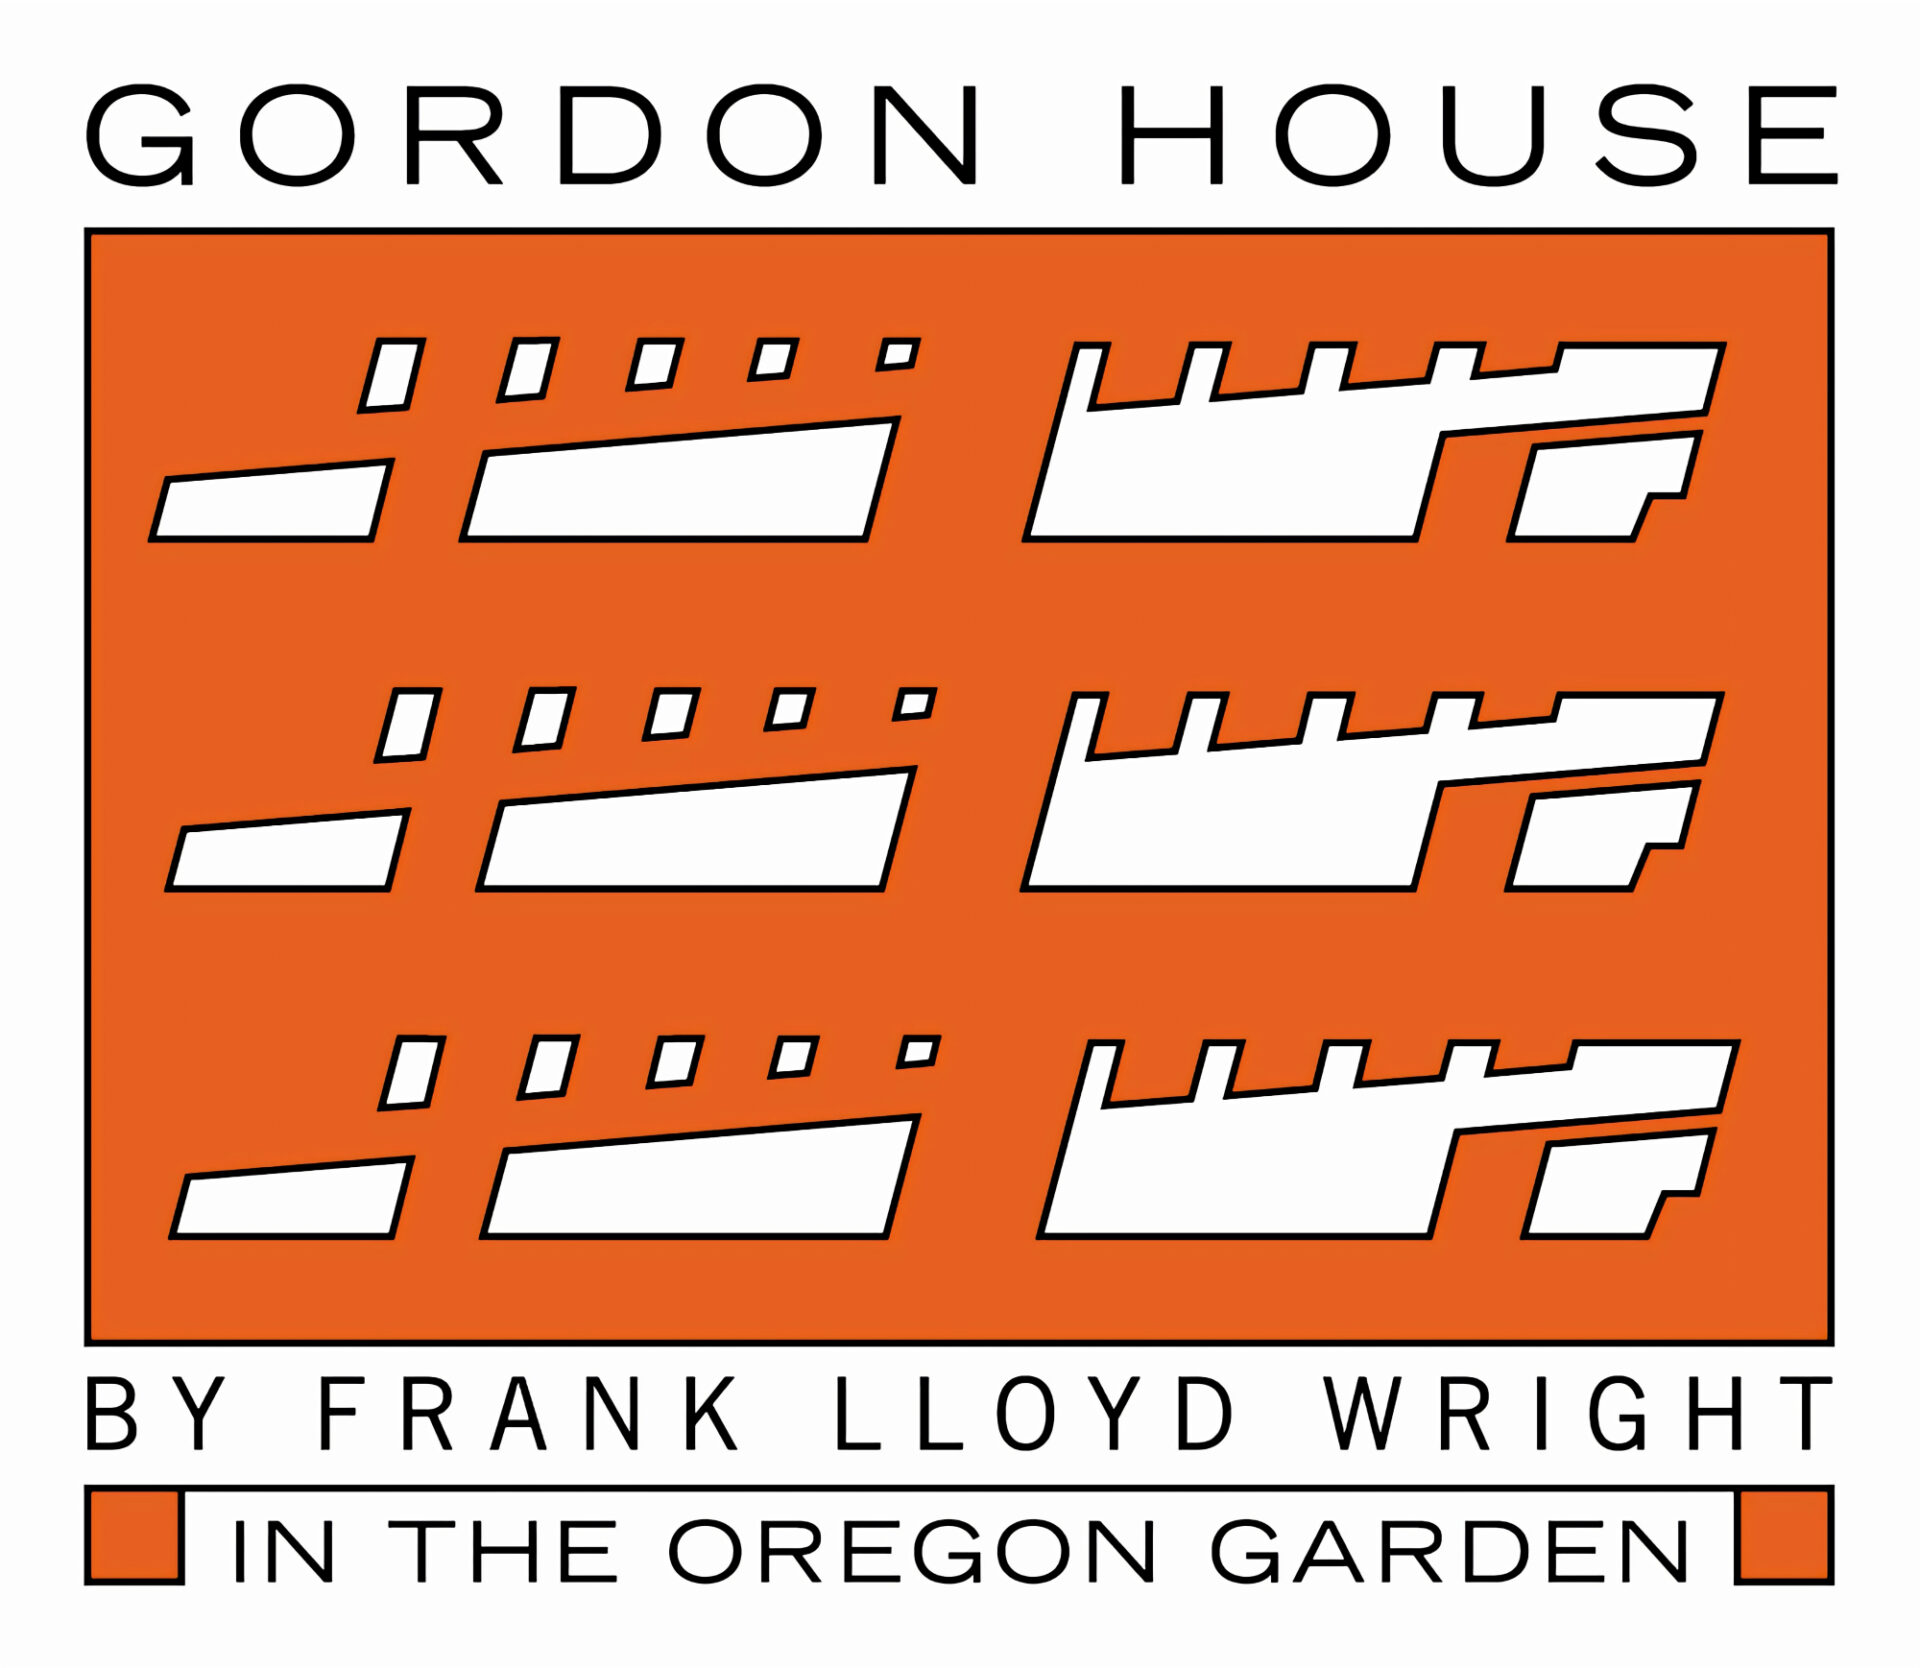 The Gordon House